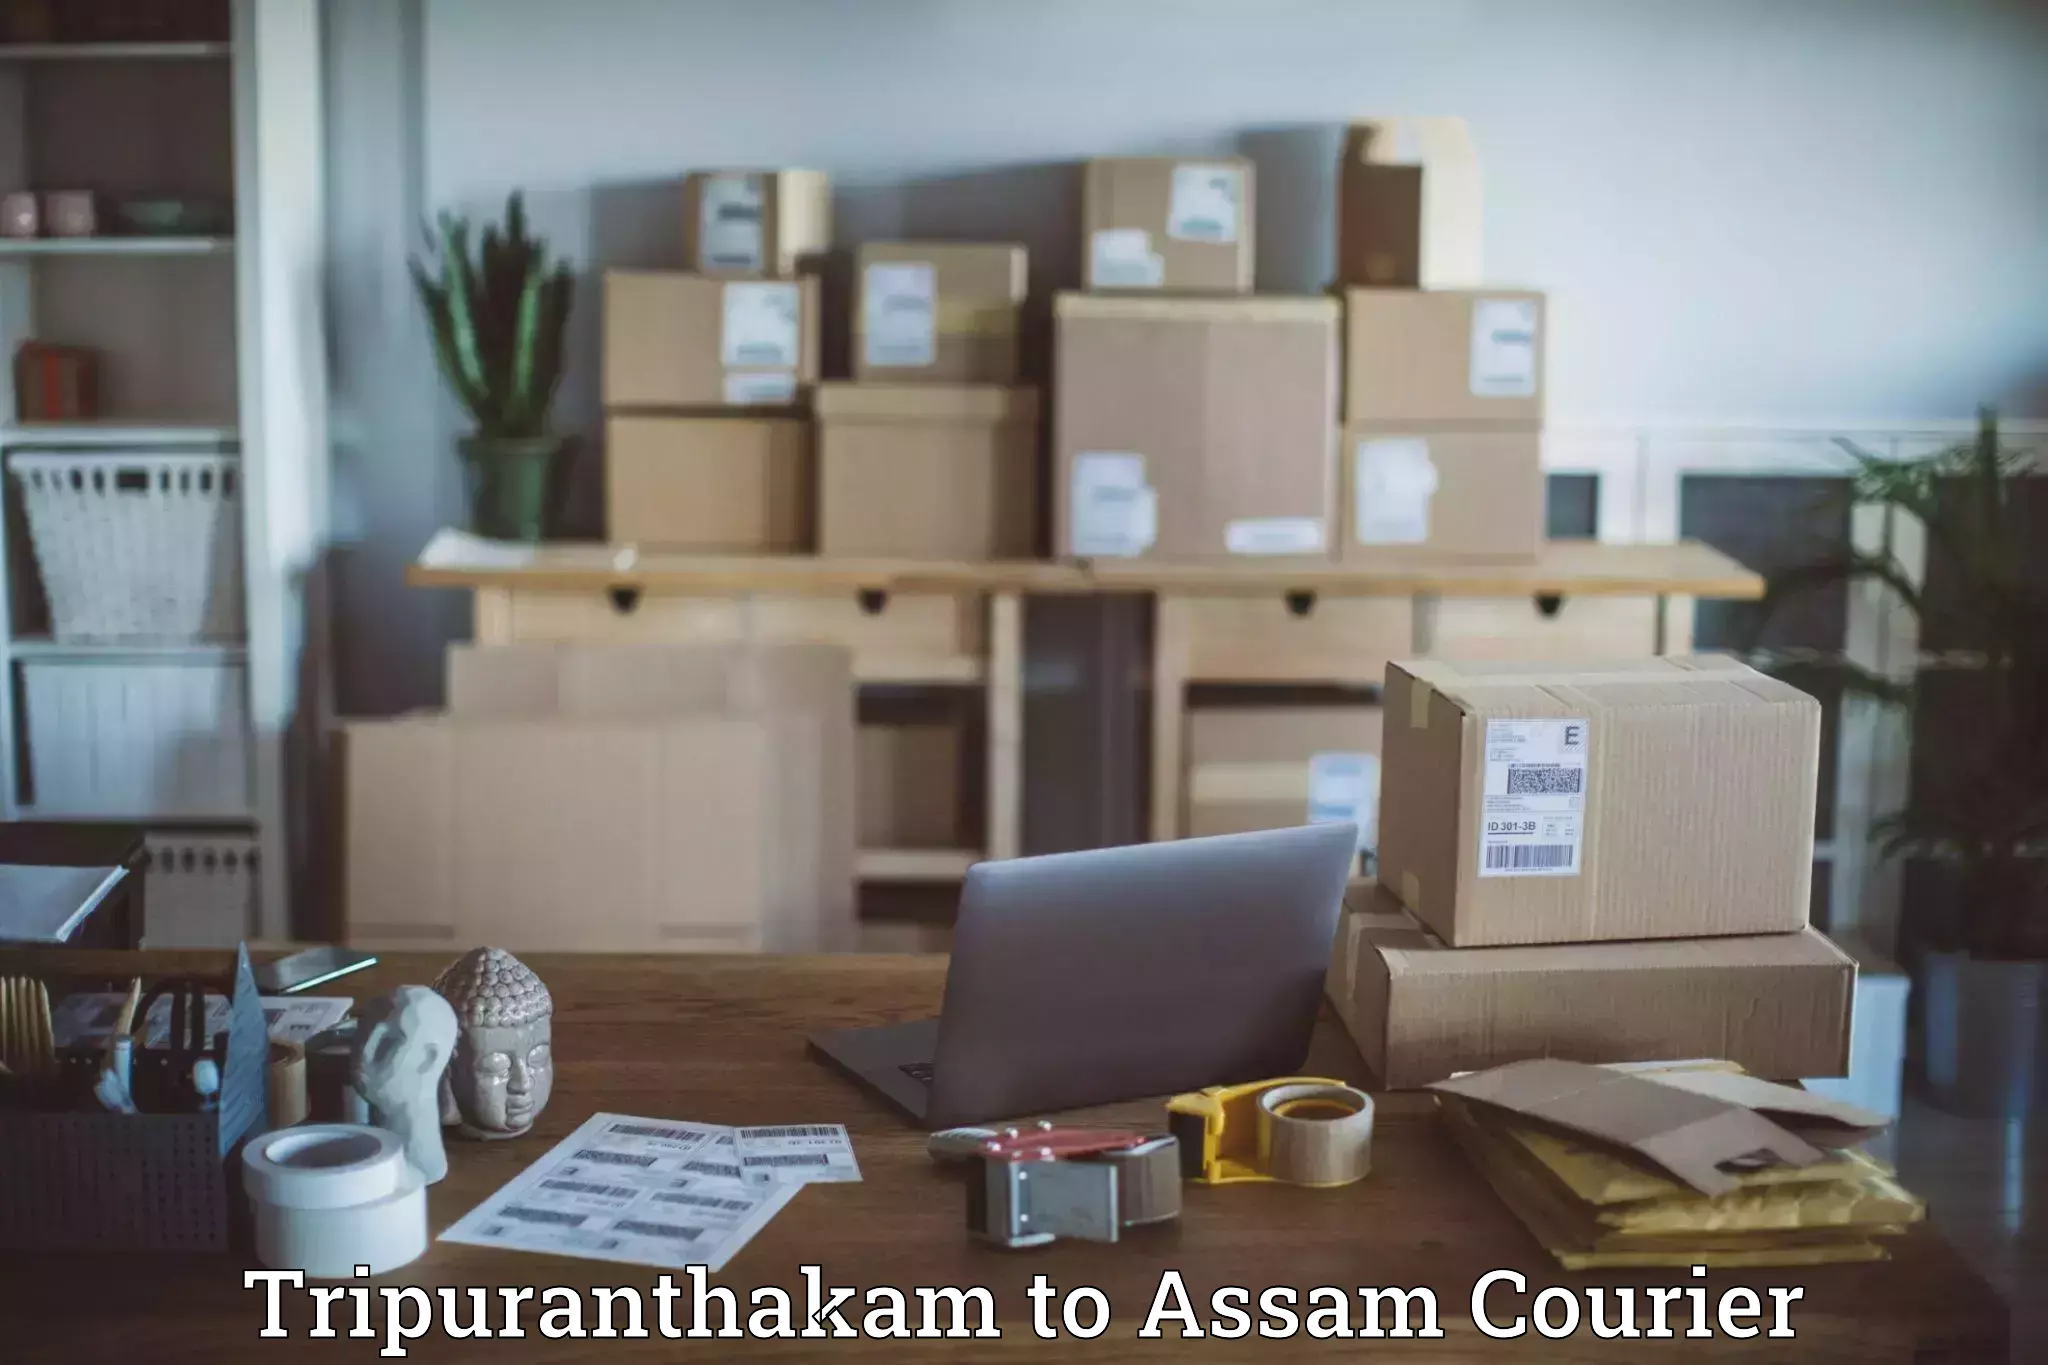 Courier insurance Tripuranthakam to Behali